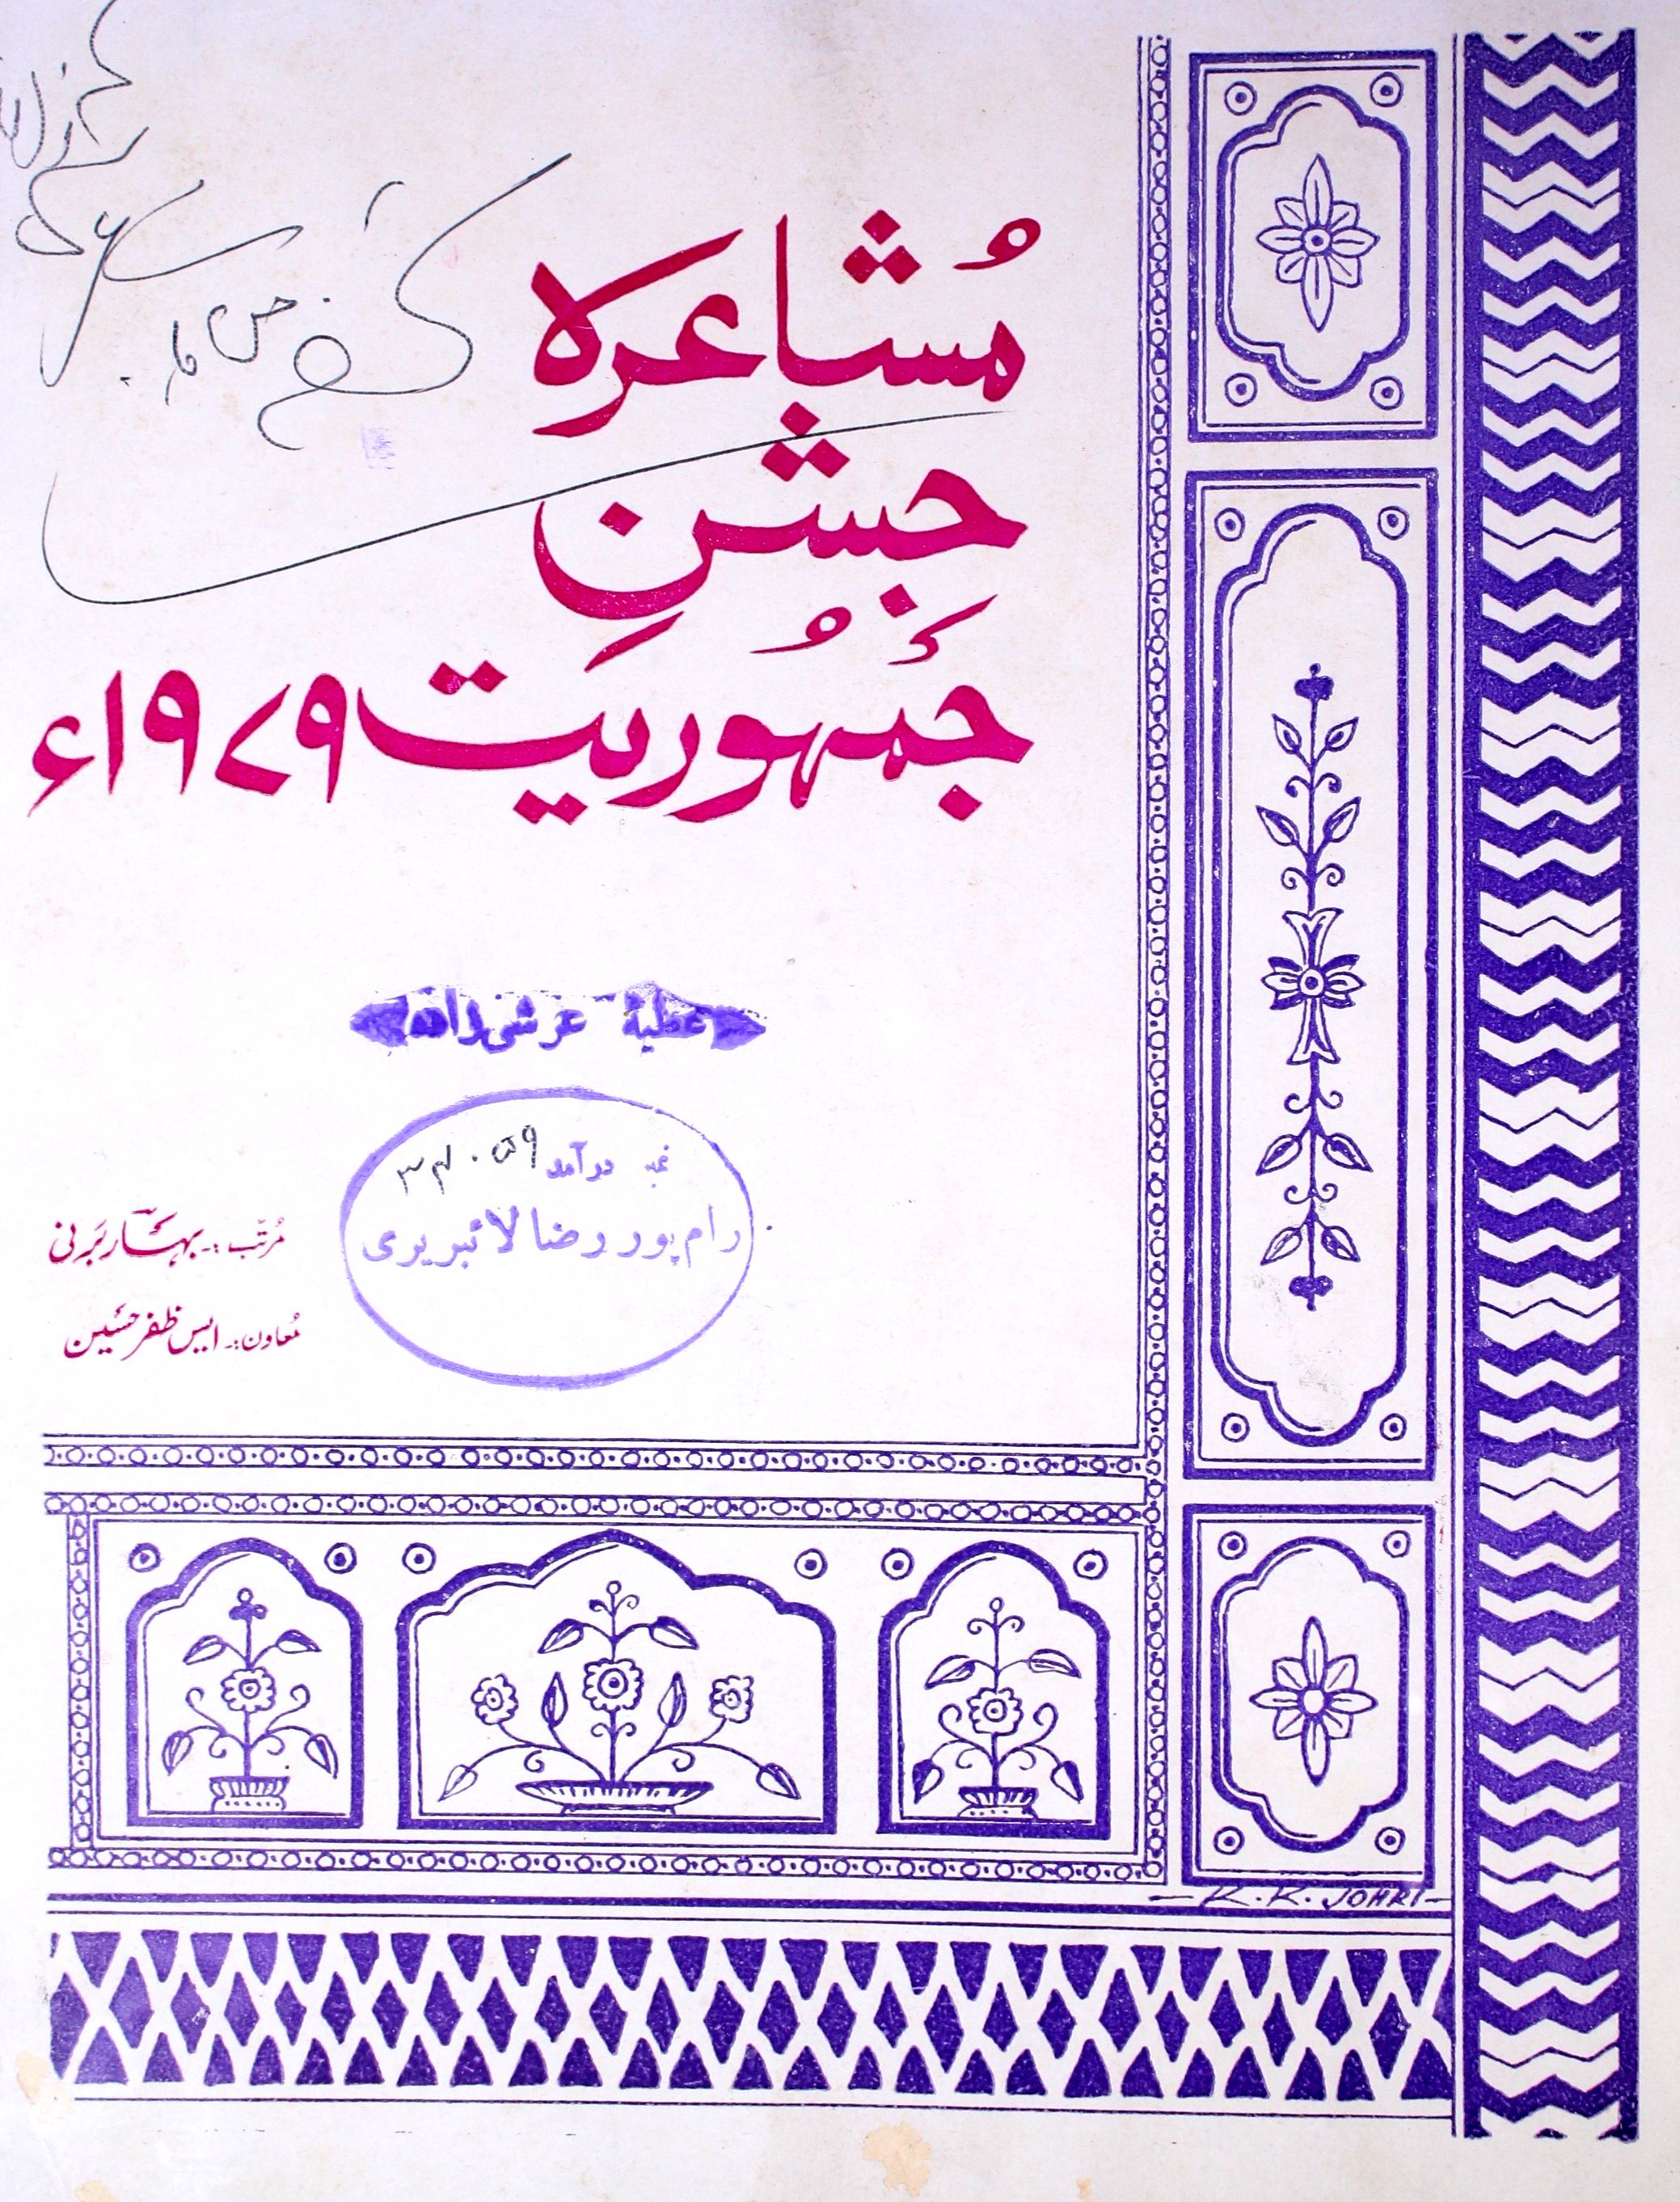 mushaira jashn-e-jamuhriyat 1979